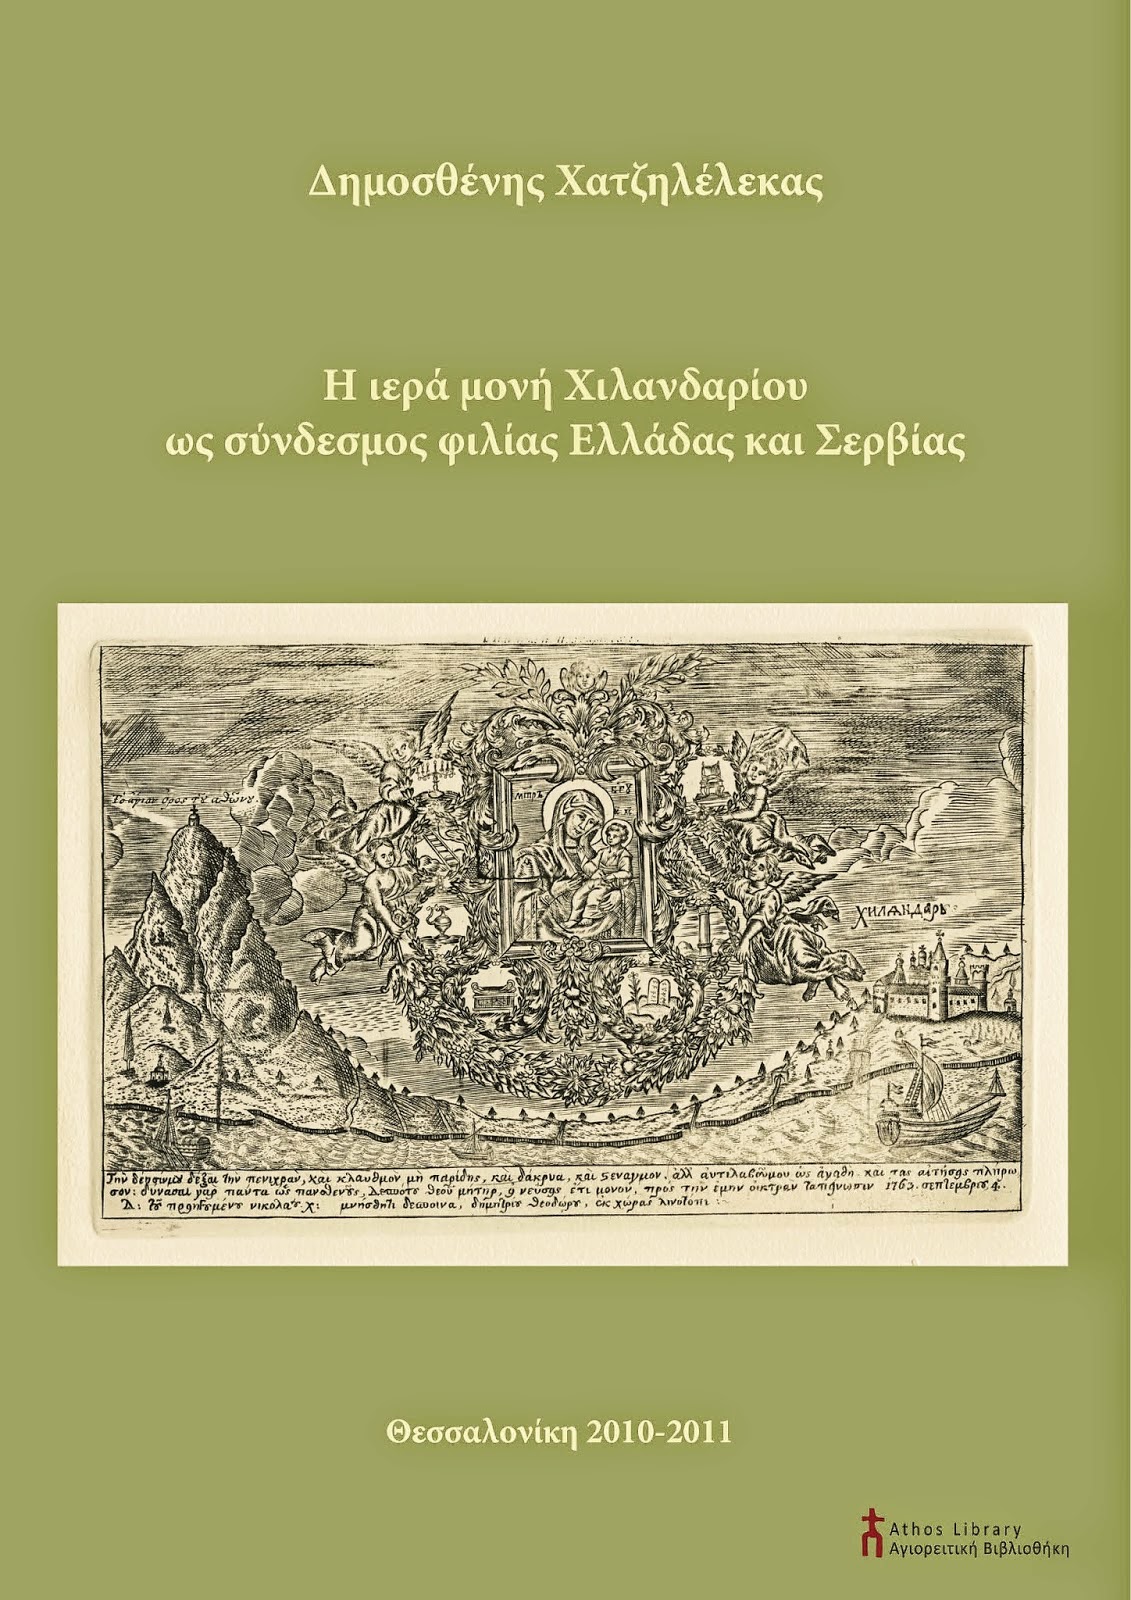 6351 - Η ιερά μονή Χιλανδαρίου ως σύνδεσμος φιλίας Ελλάδας και Σερβίας - Φωτογραφία 1